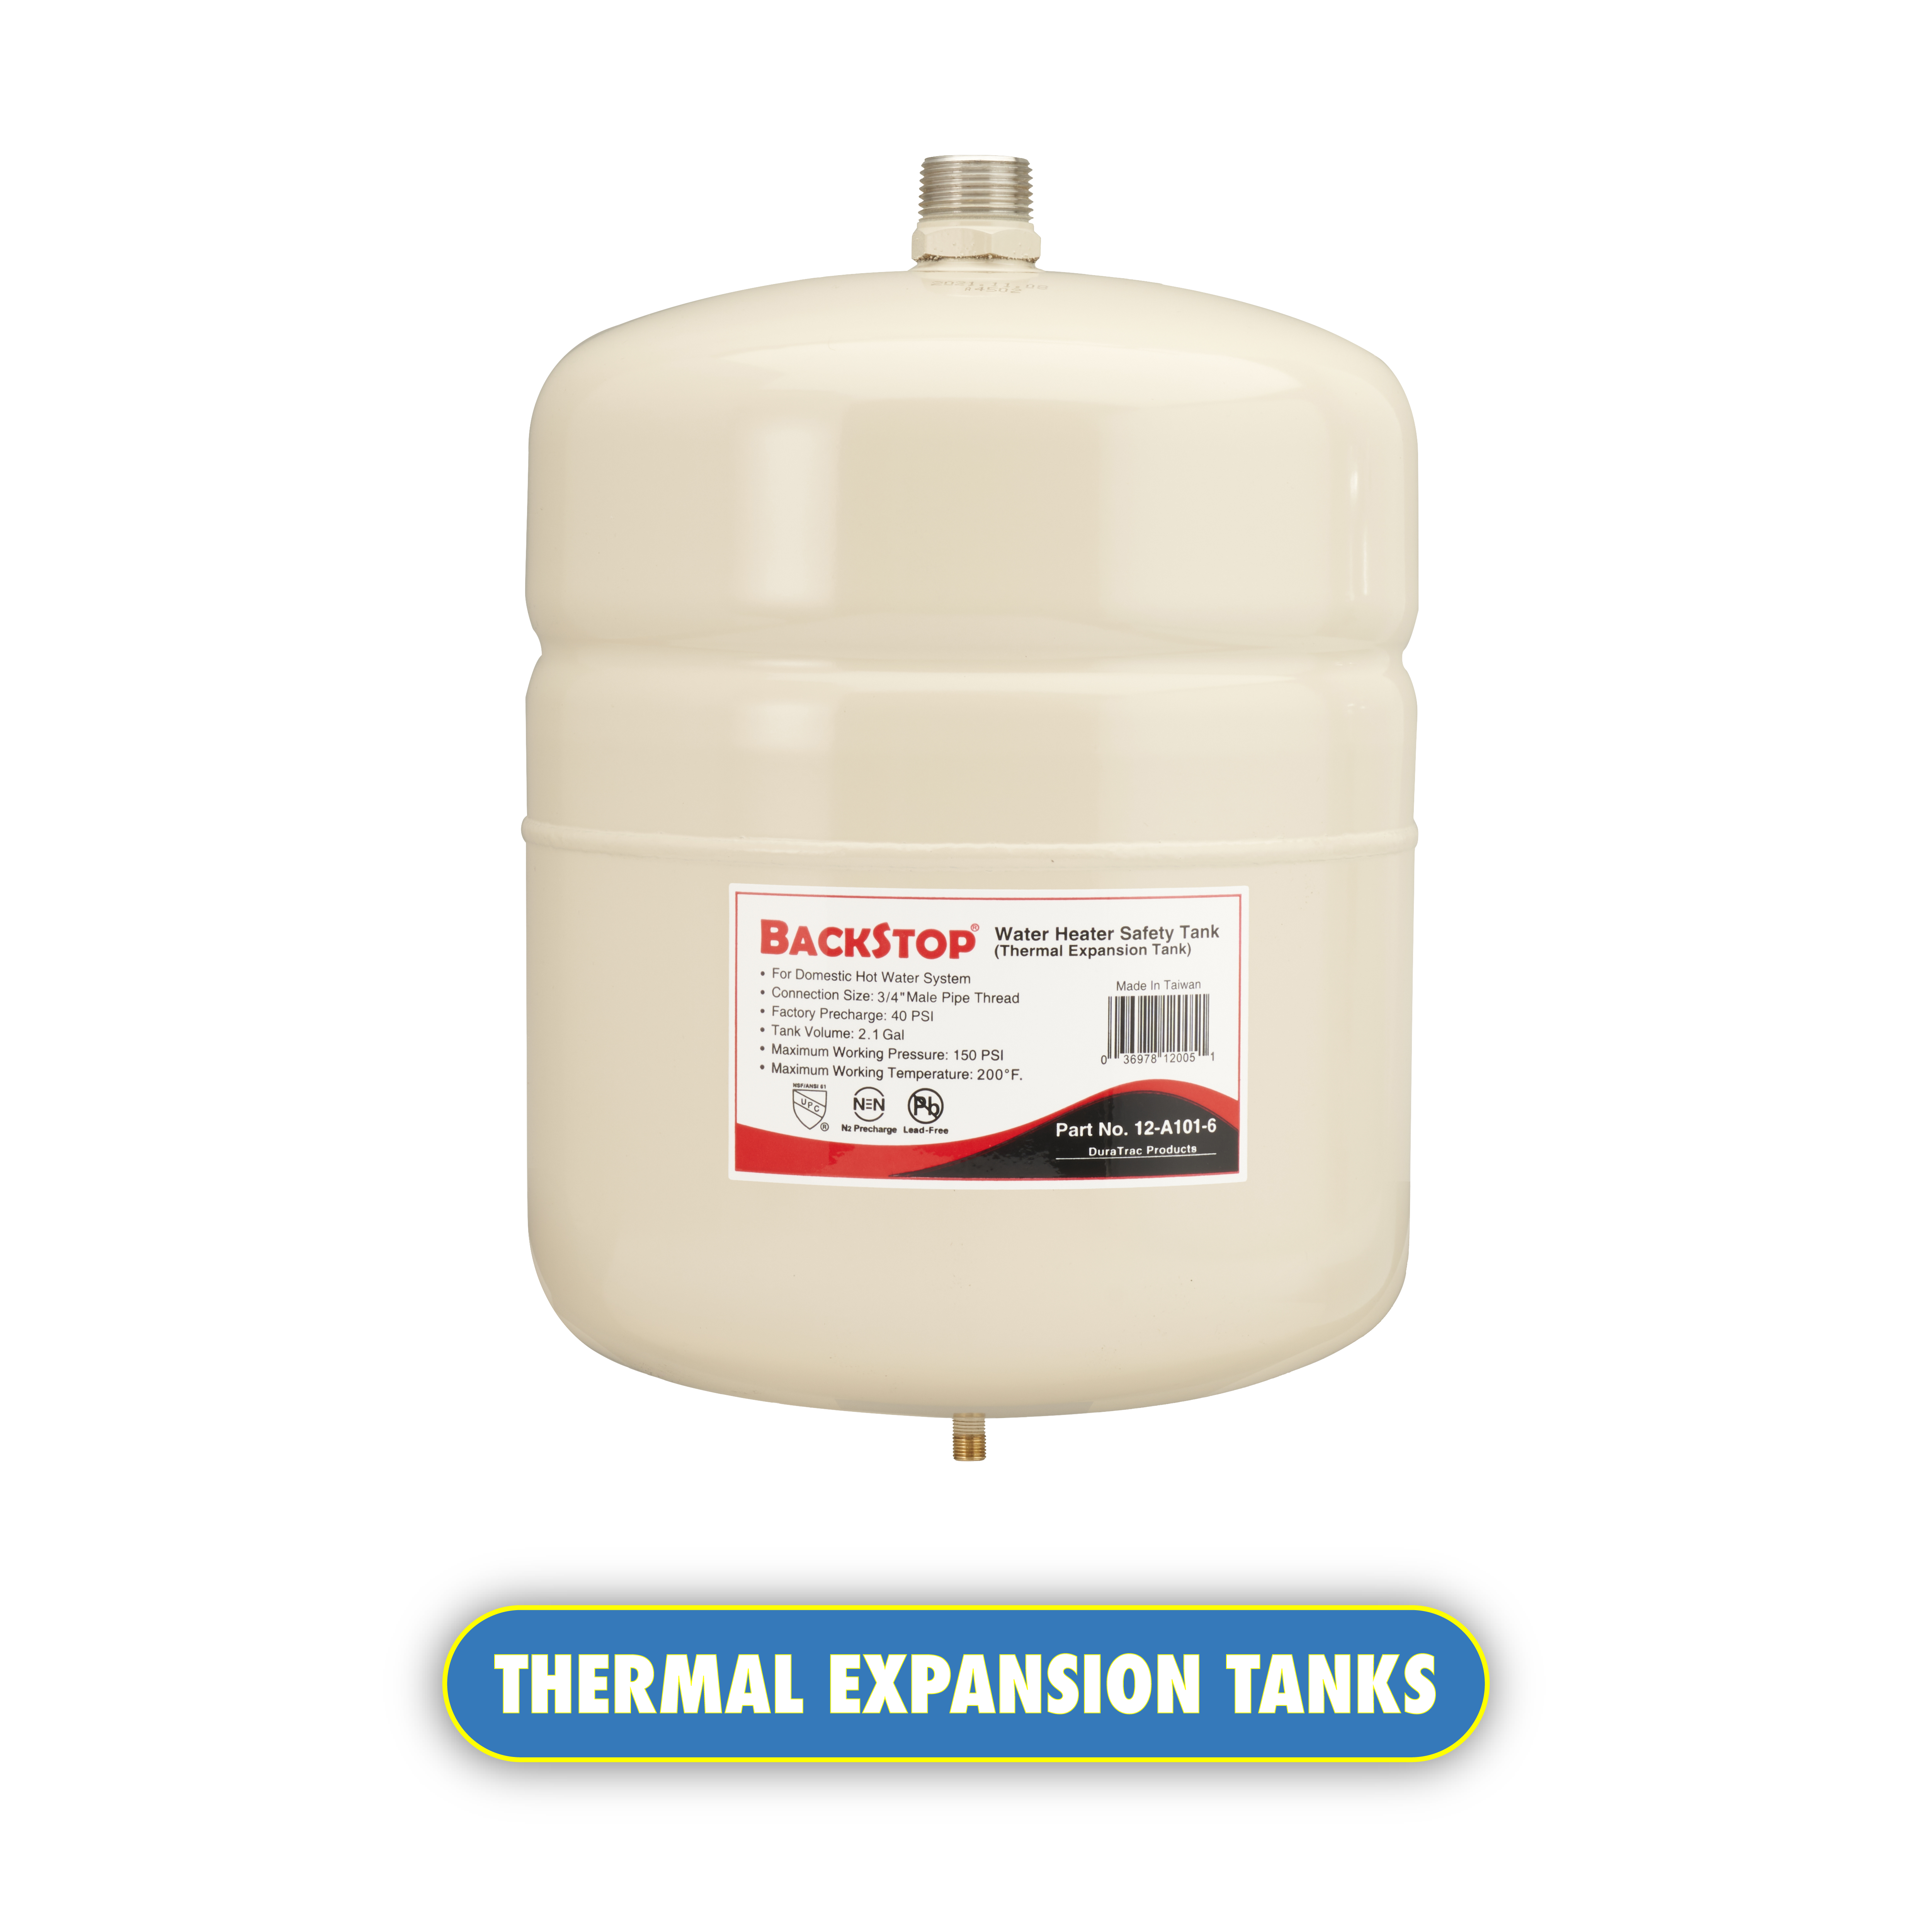 Thermal expansion tanks